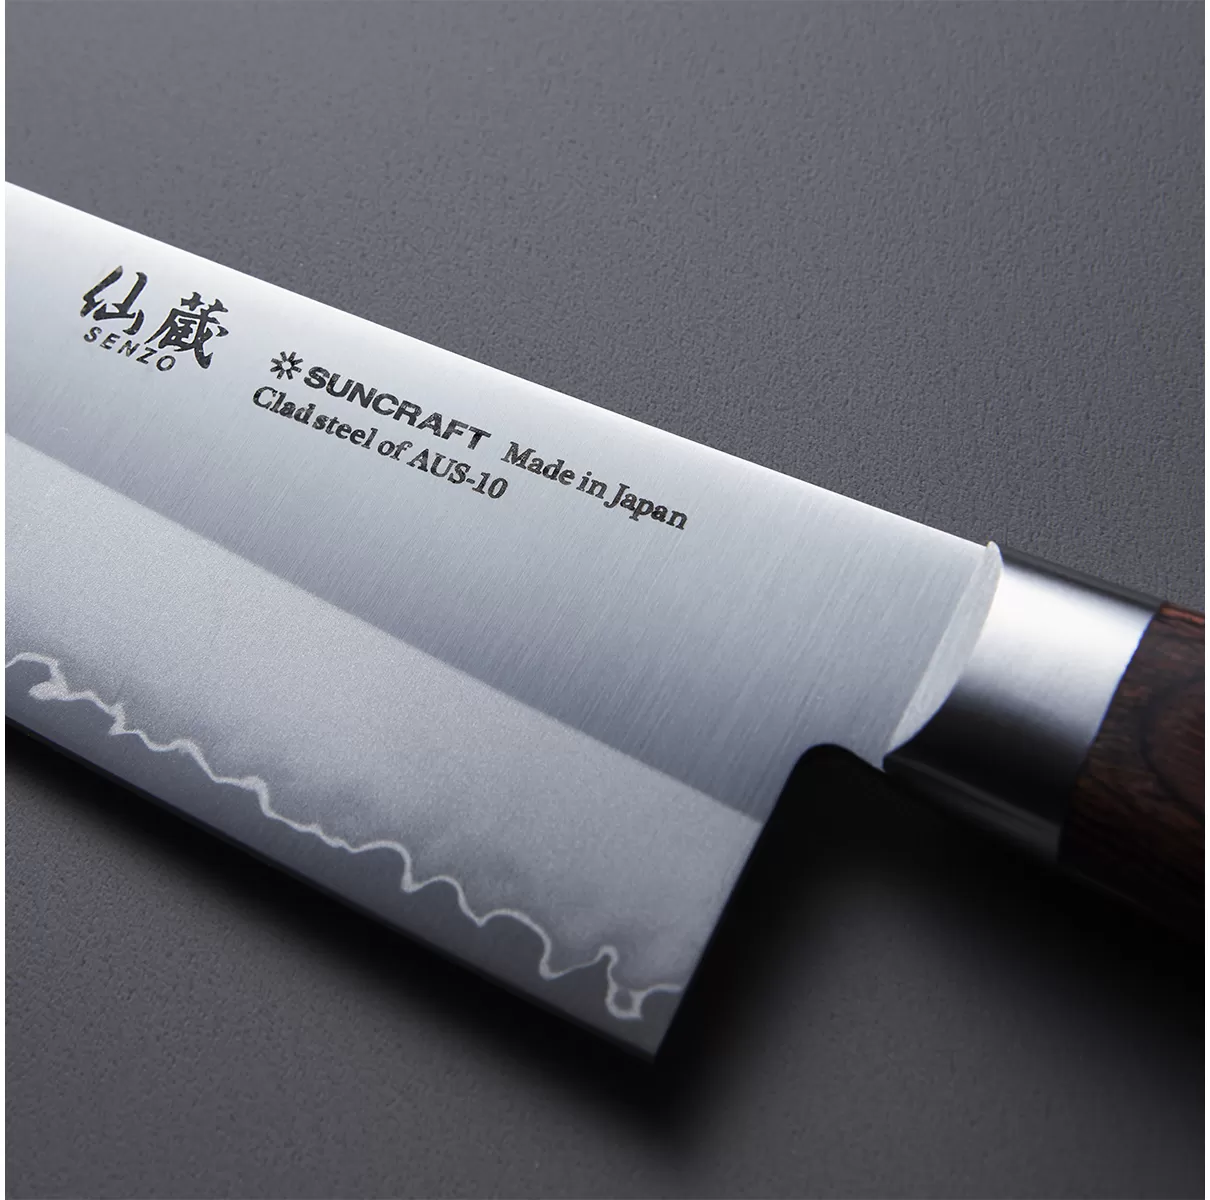 Нож кухонный Универсал 135мм, SUNСRAFT (SenzoClad) сталь AUS-10 60 HRC Япония